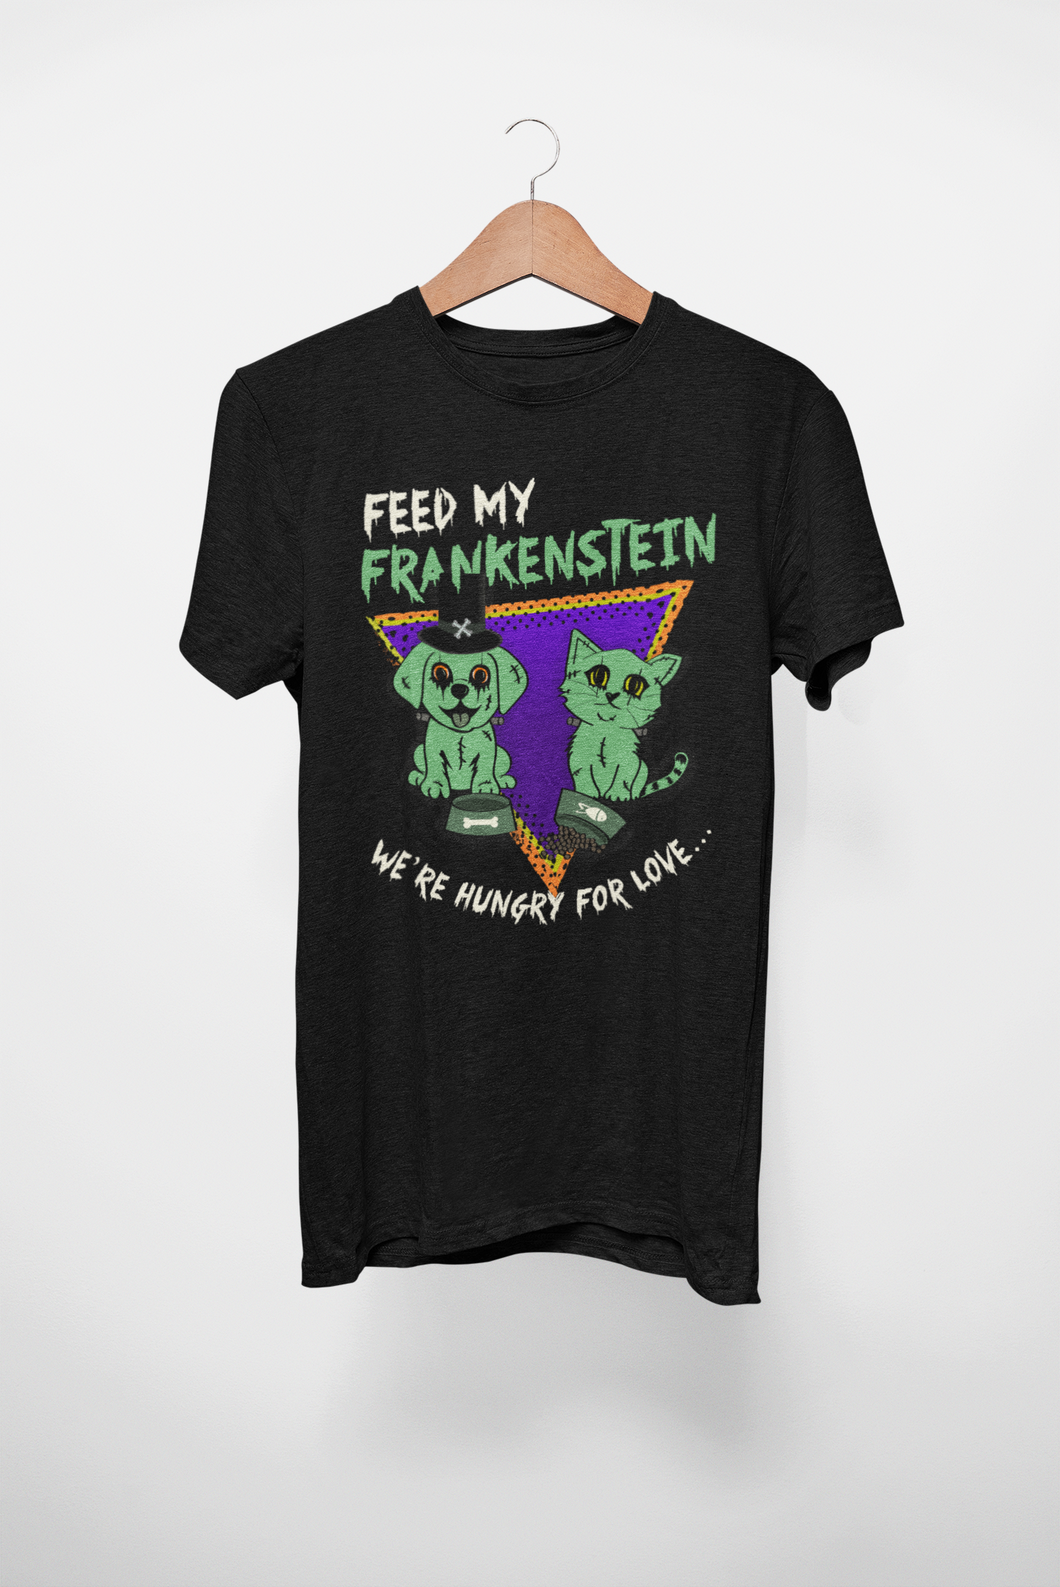 Feed My Frankenstein Men's/Unisex or Women's T-shirt